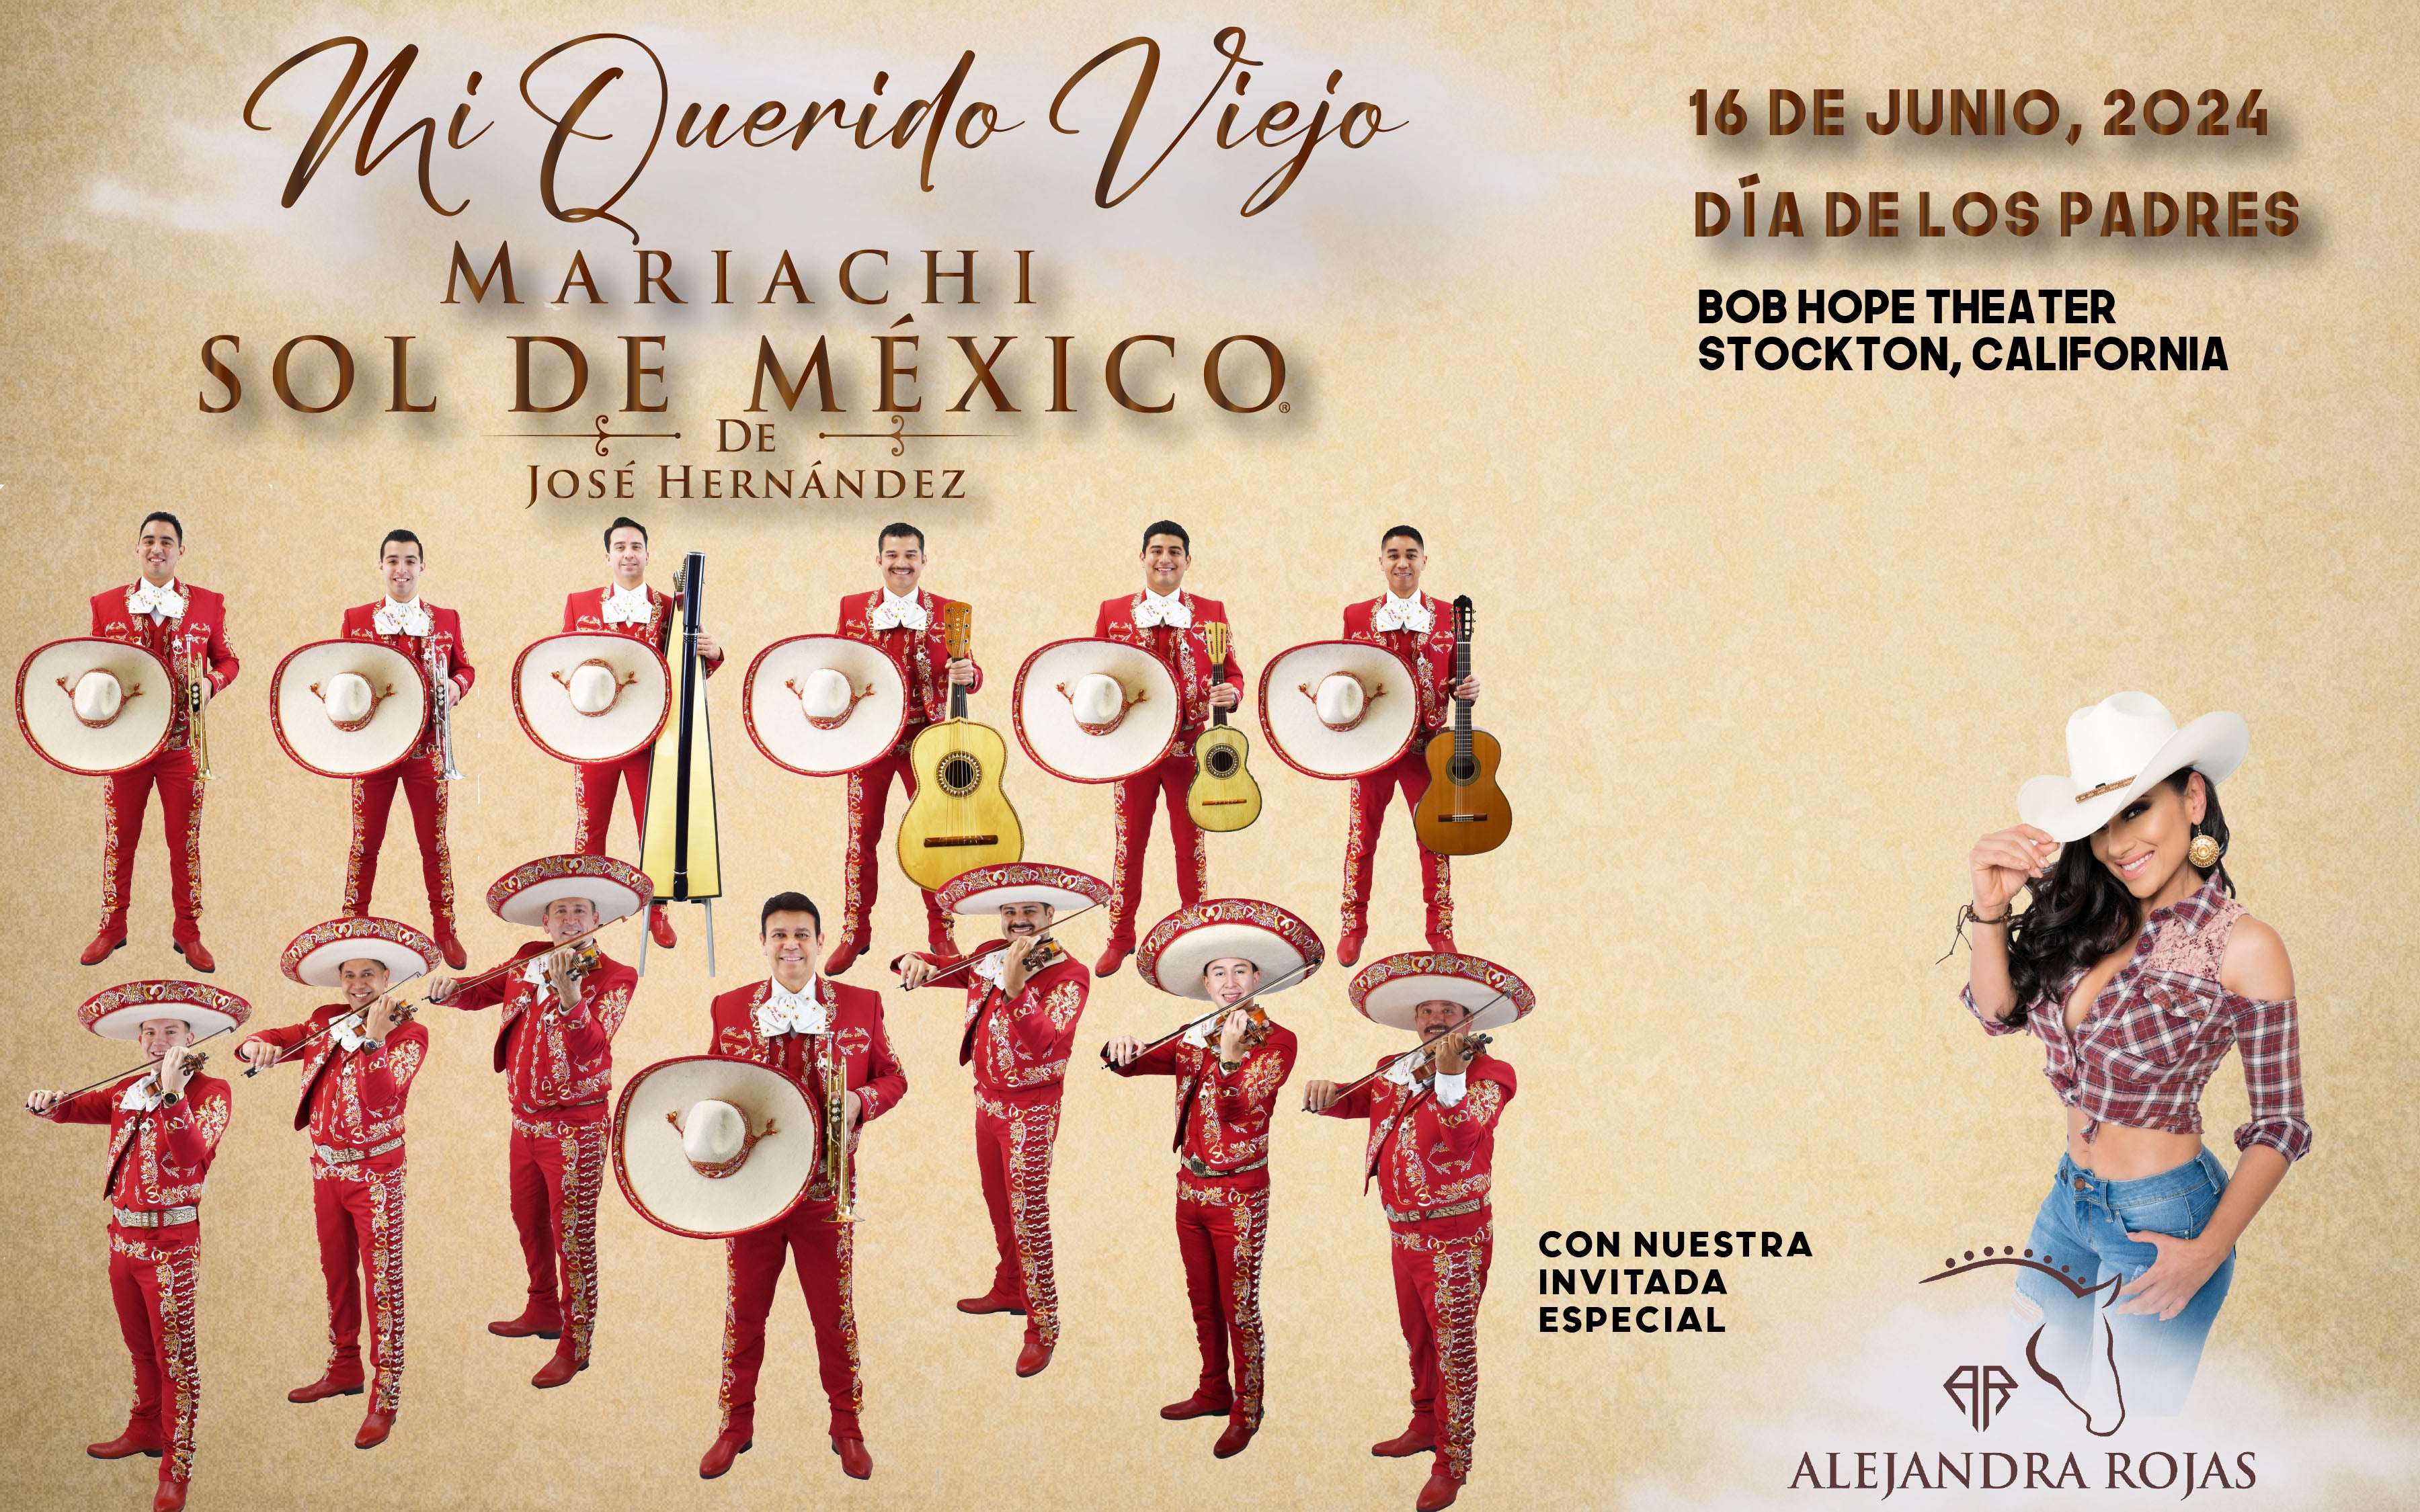 Mariachi Sol de Mexico de Jose Hernandez : Presents Mi Querido Viejo